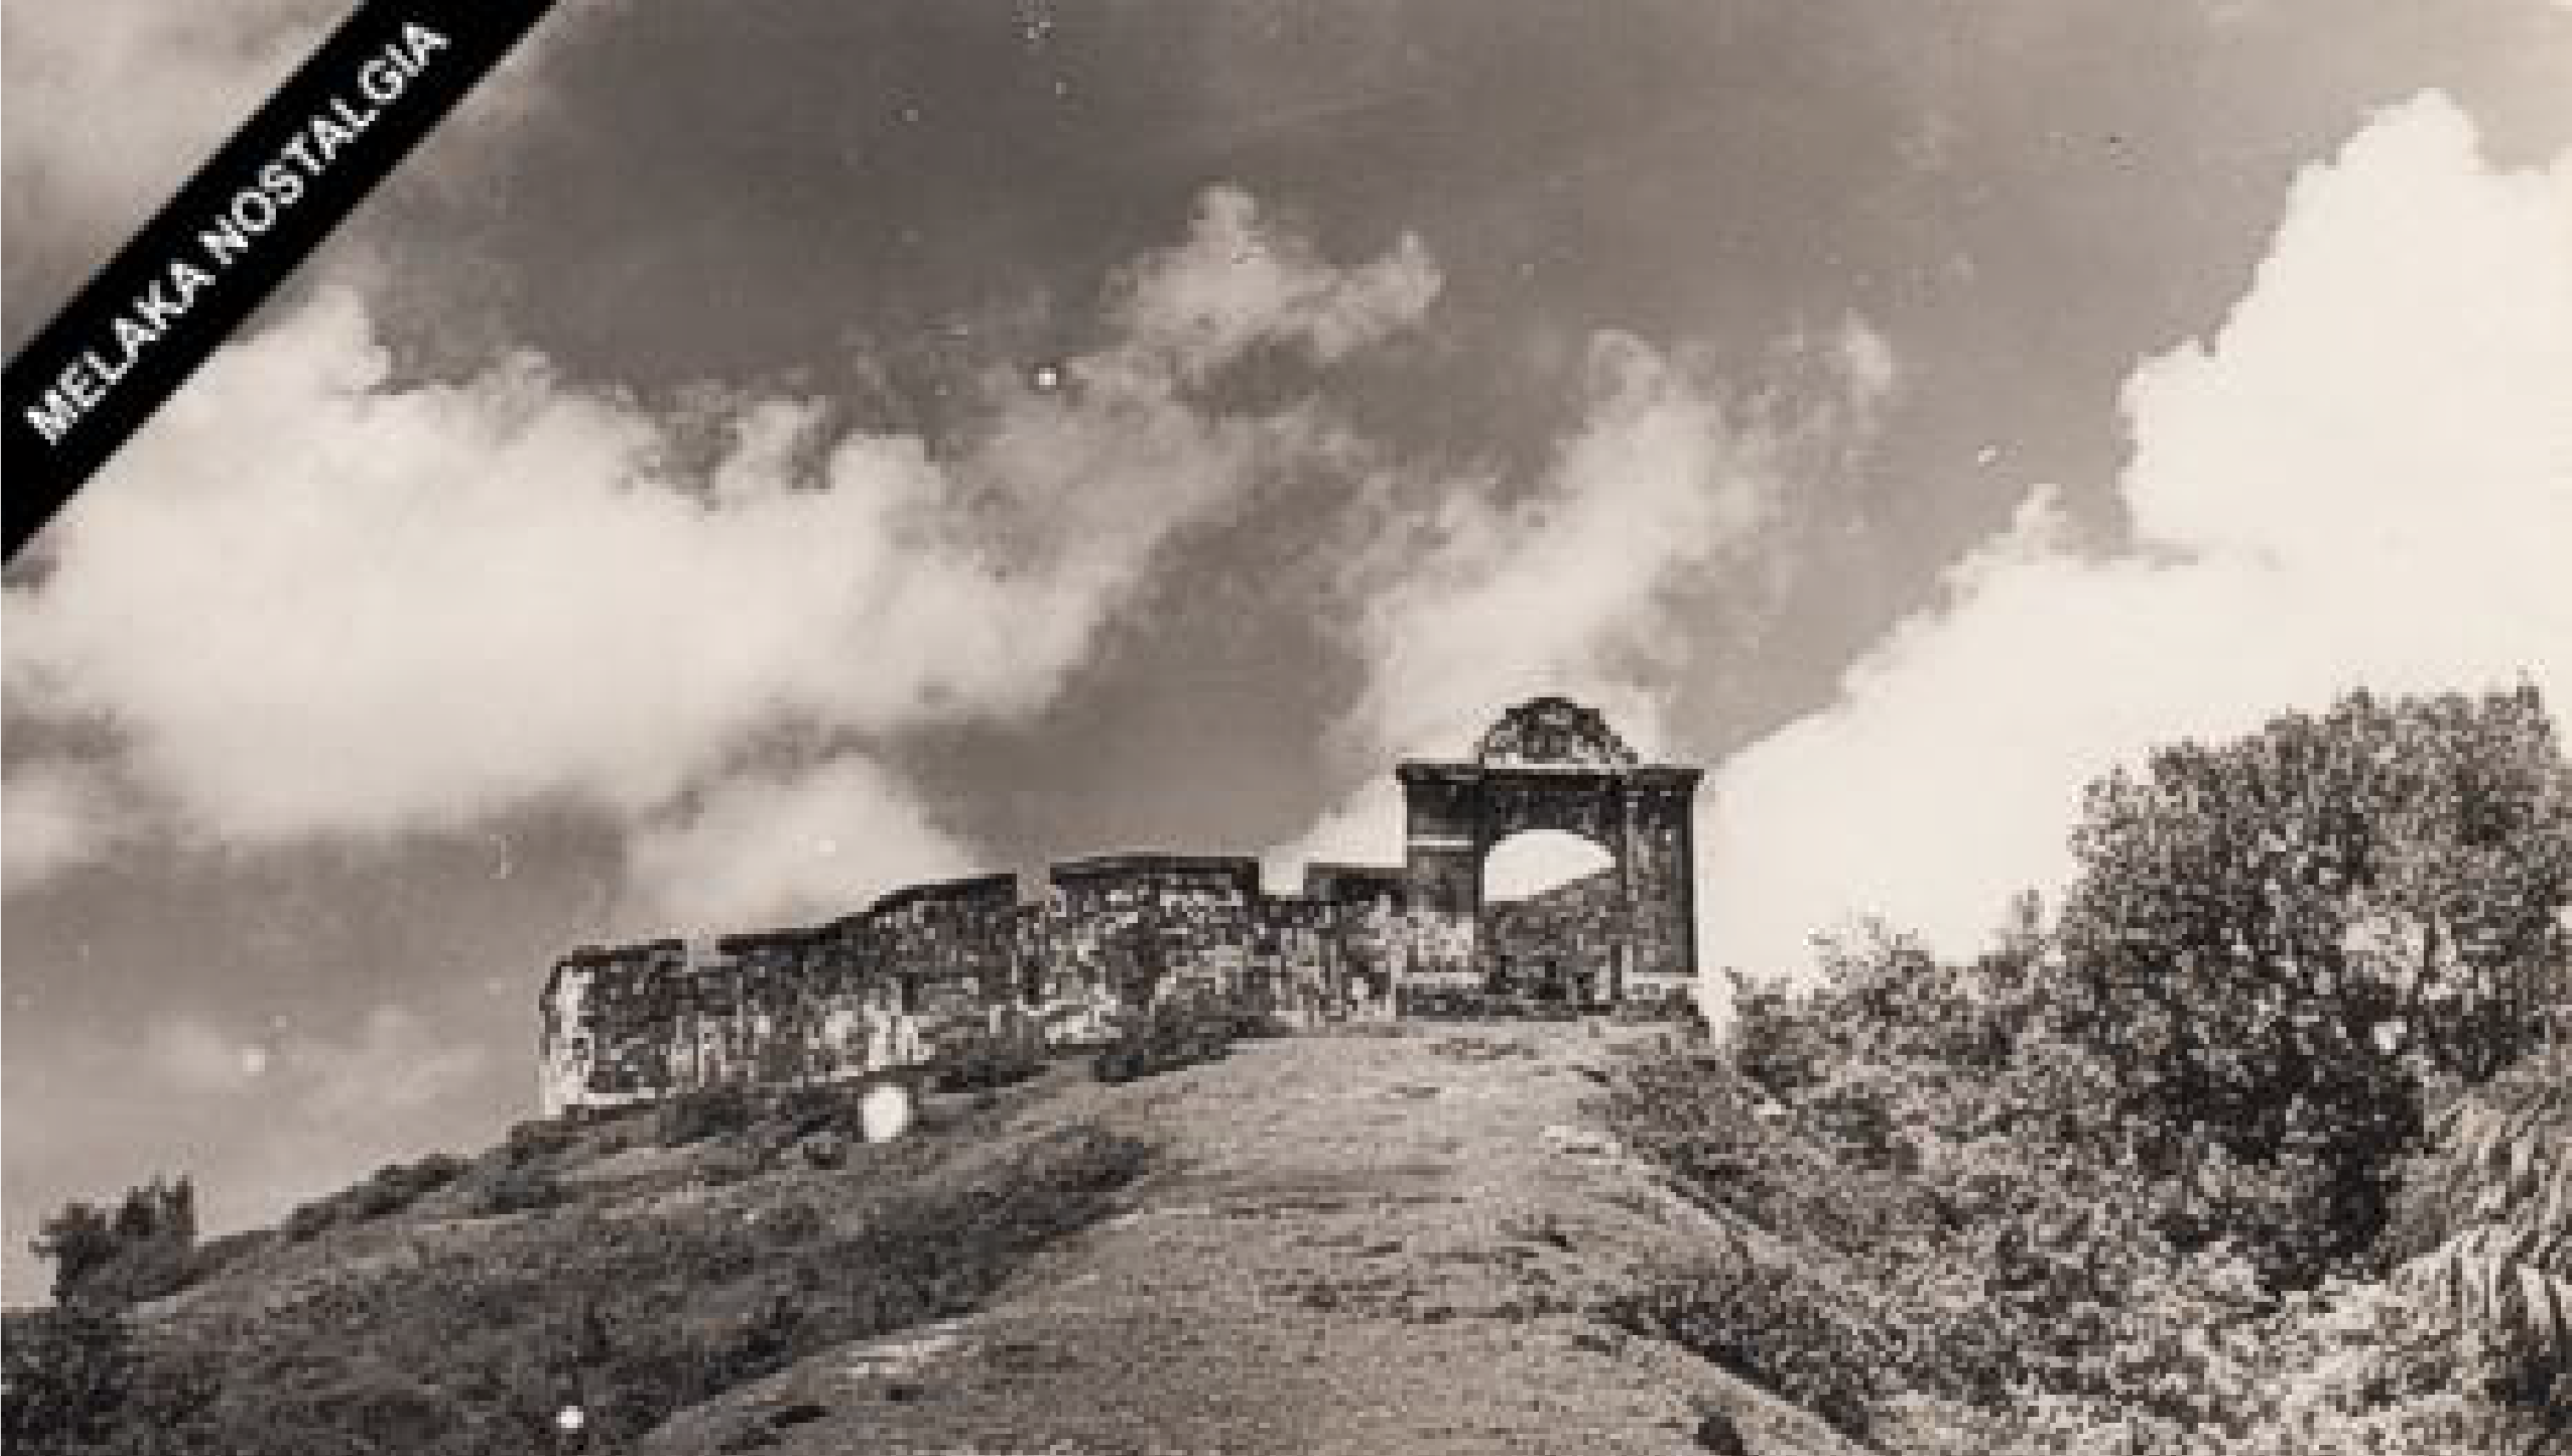 St. John's Fort circa 1940 (source: Melaka Nostalgia)